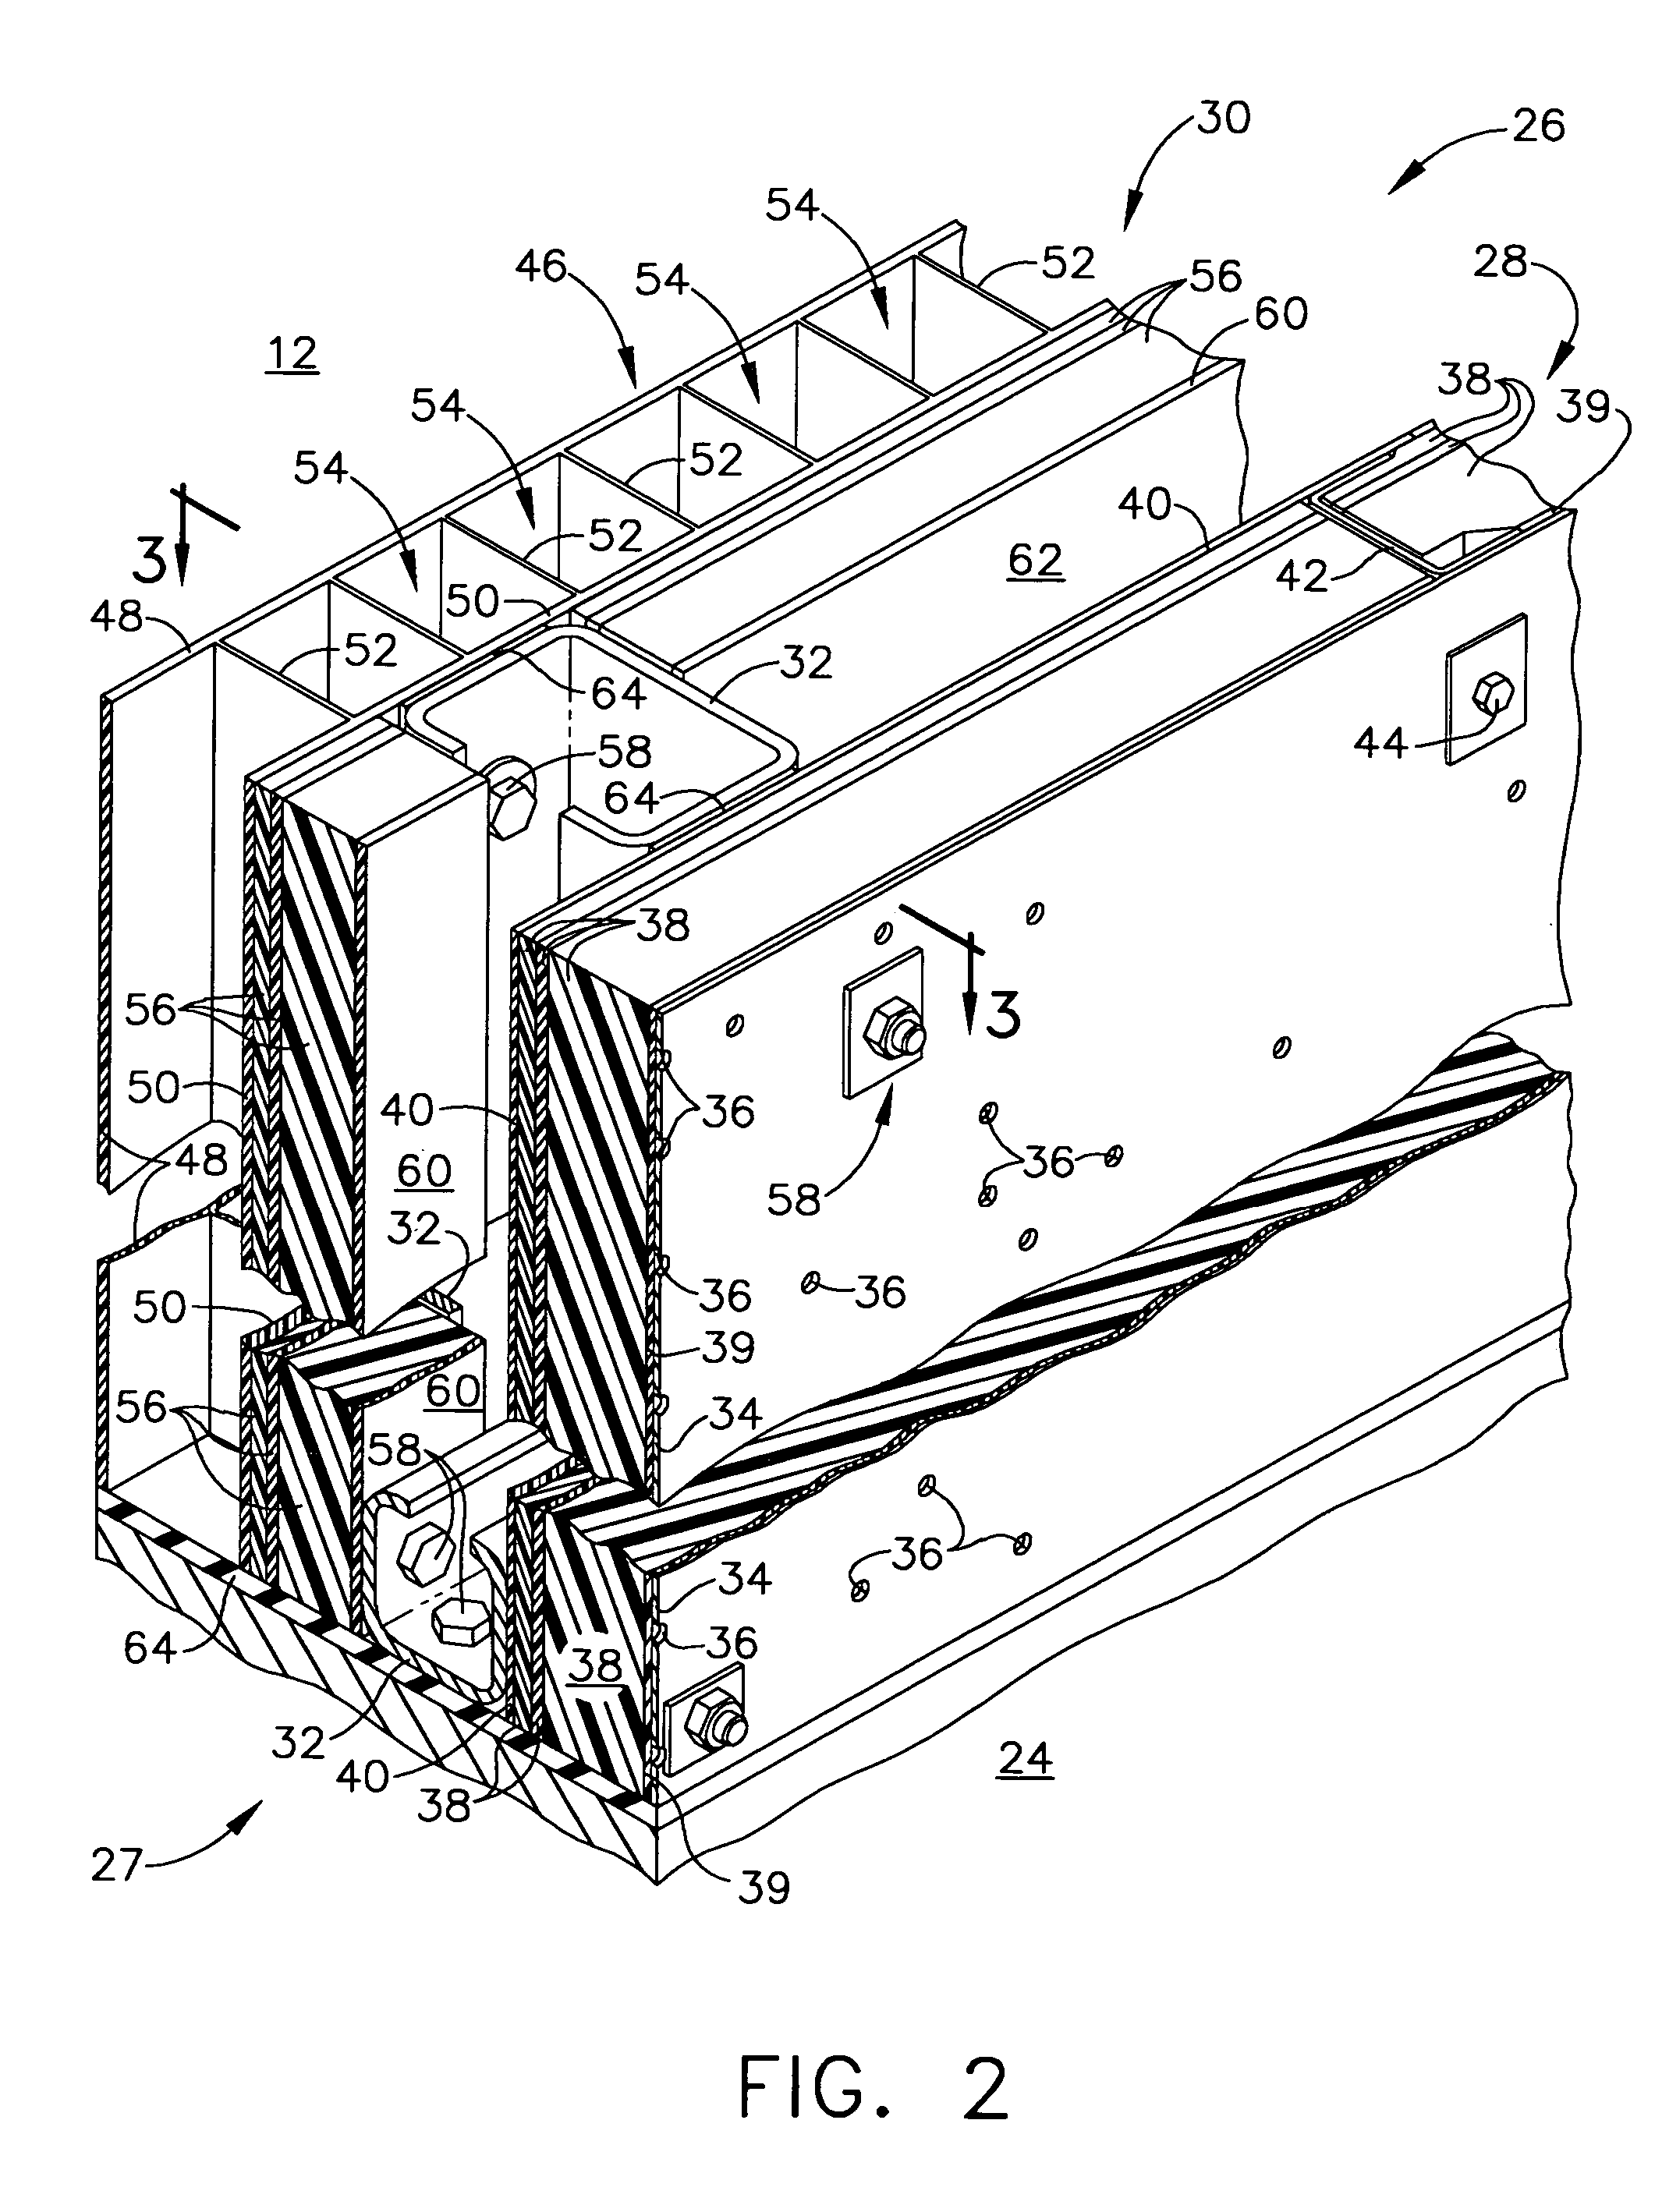 Thermal-acoustic enclosure